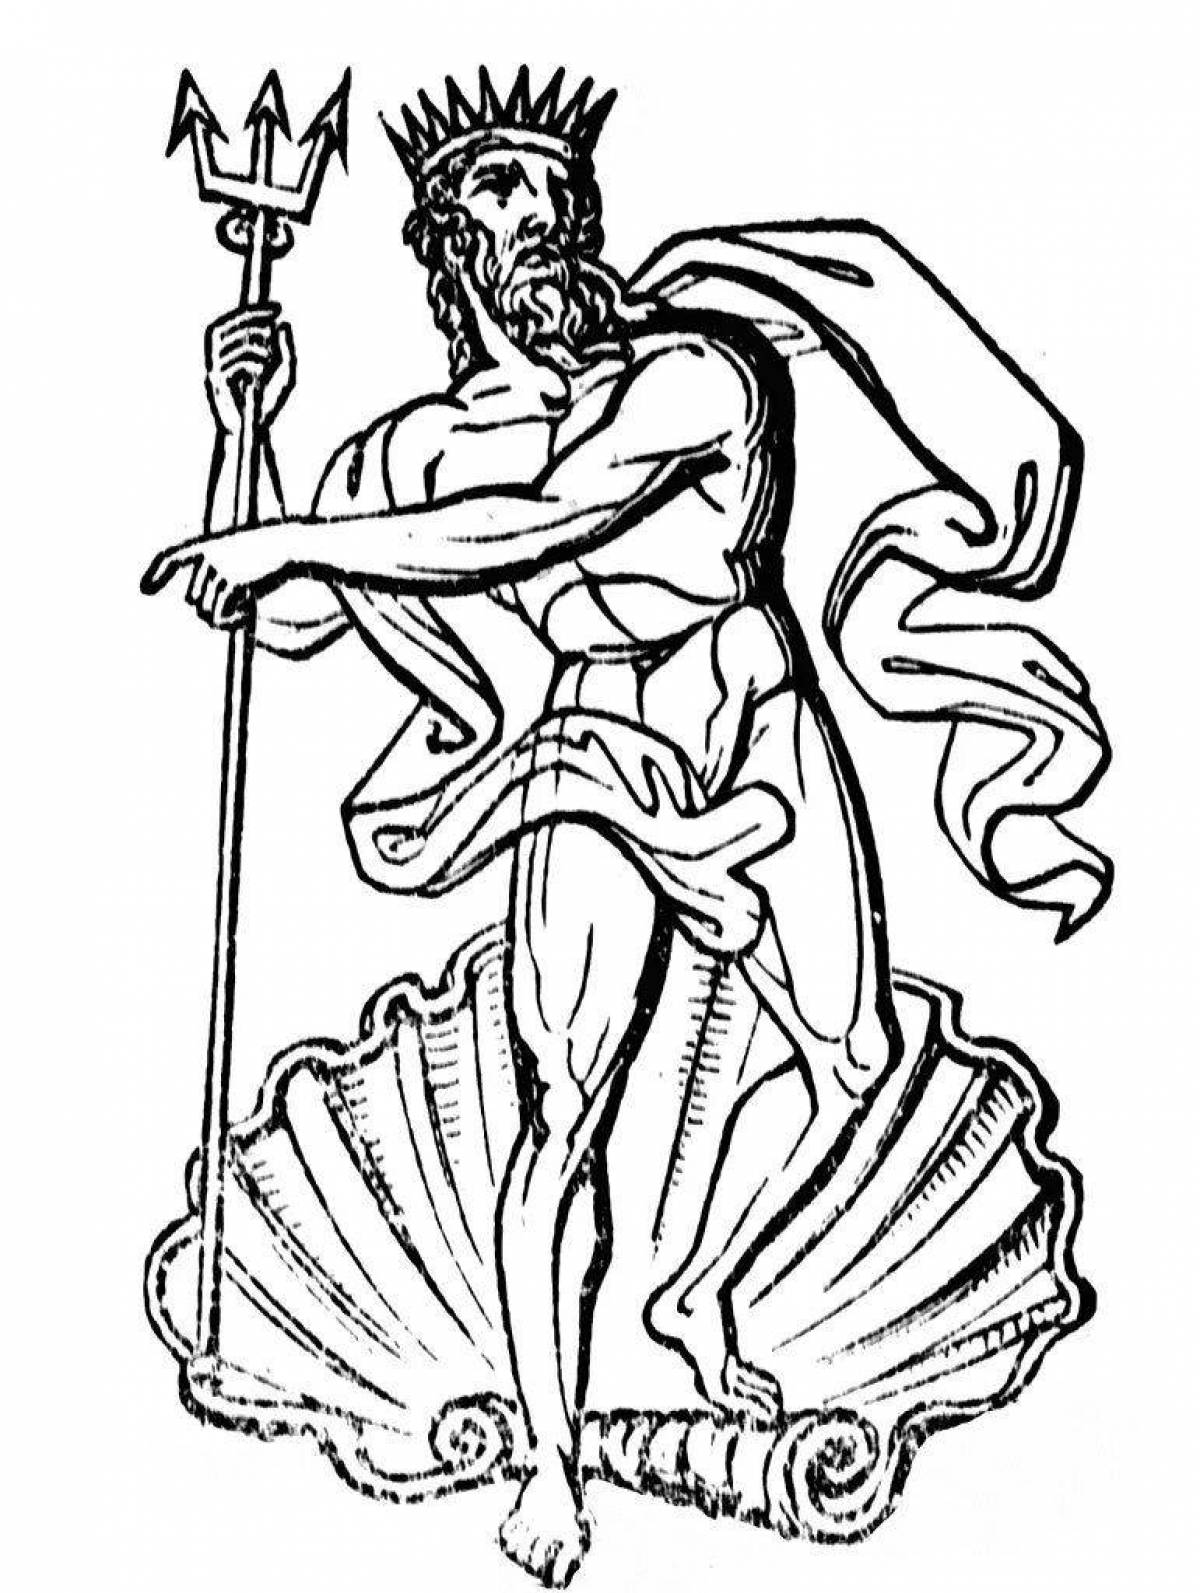 Рисунок бога древнего рима. Римский Бог Нептун. Нептун Бог Рима. Бог Греции Посейдон. Римский Бог Нептун рисунок.